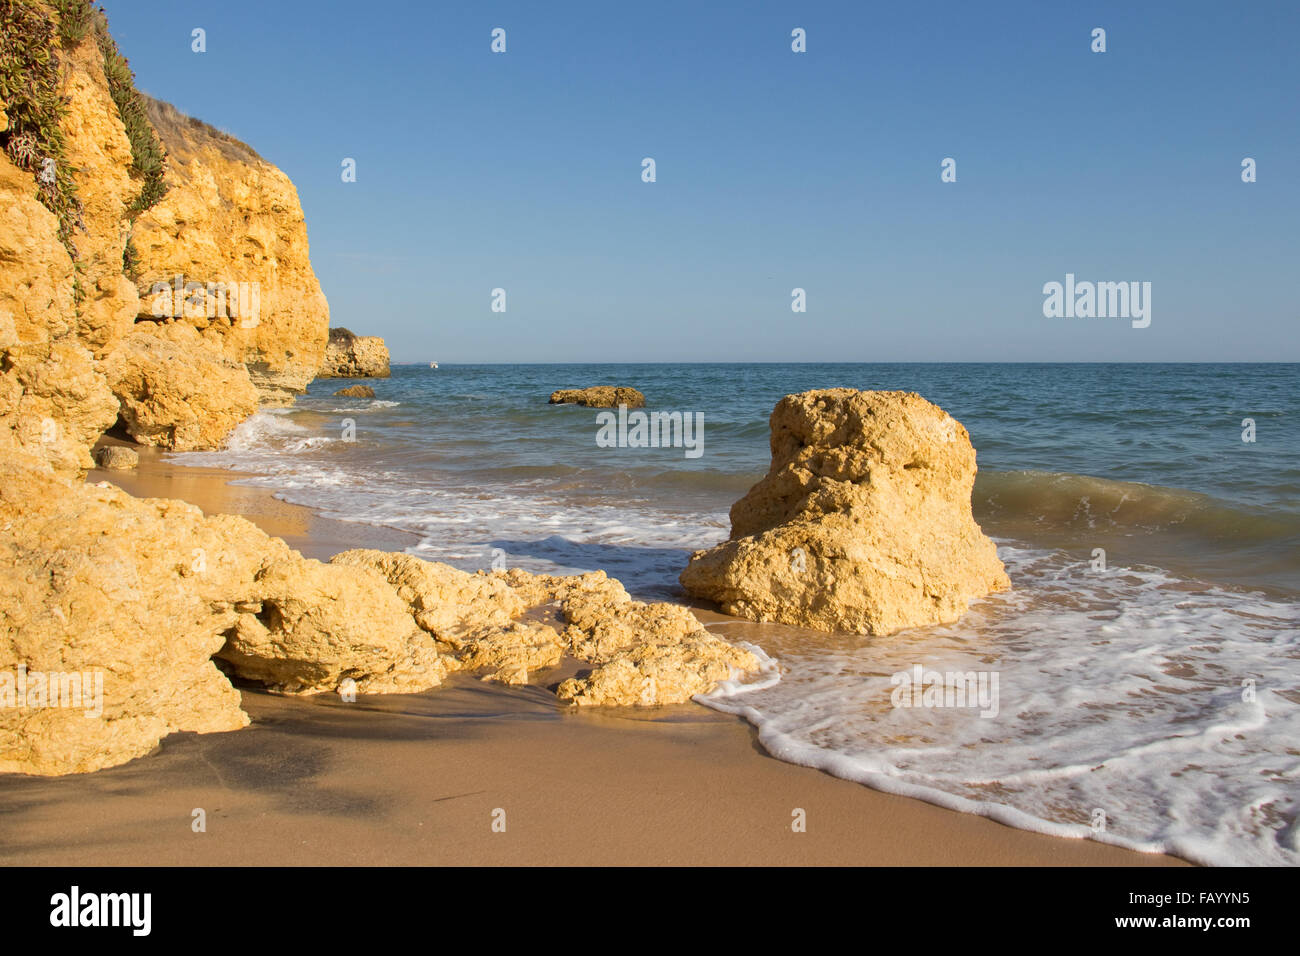 Spiaggia di Praia de Santa Eulalia, nei pressi di Albufeira, Algarve, PORTOGALLO Foto Stock